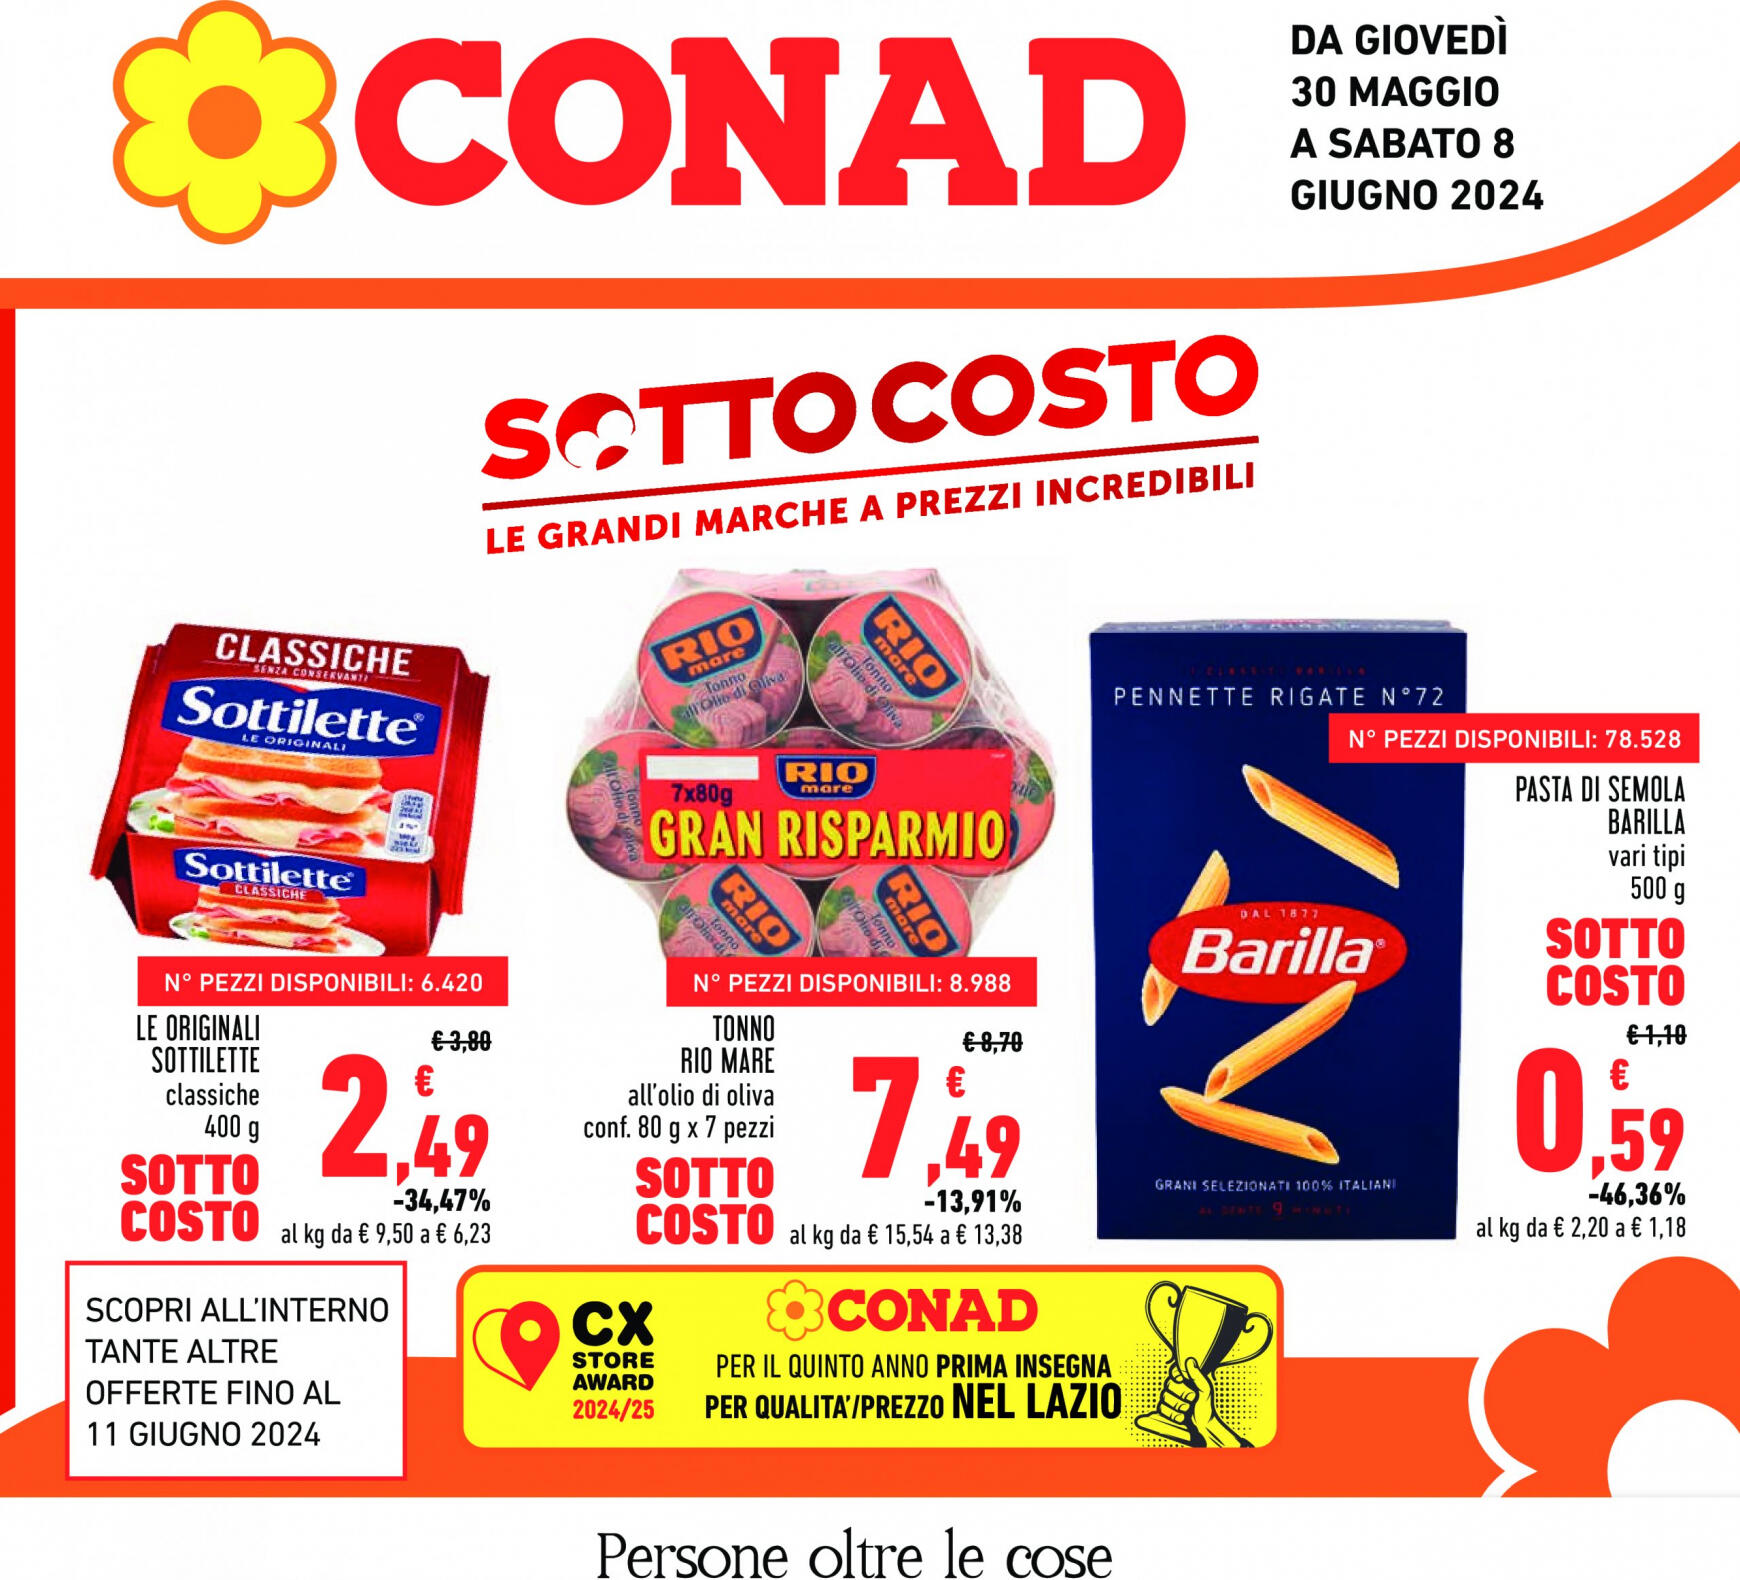 conad - Nuovo volantino Conad 30.05. - 08.06.